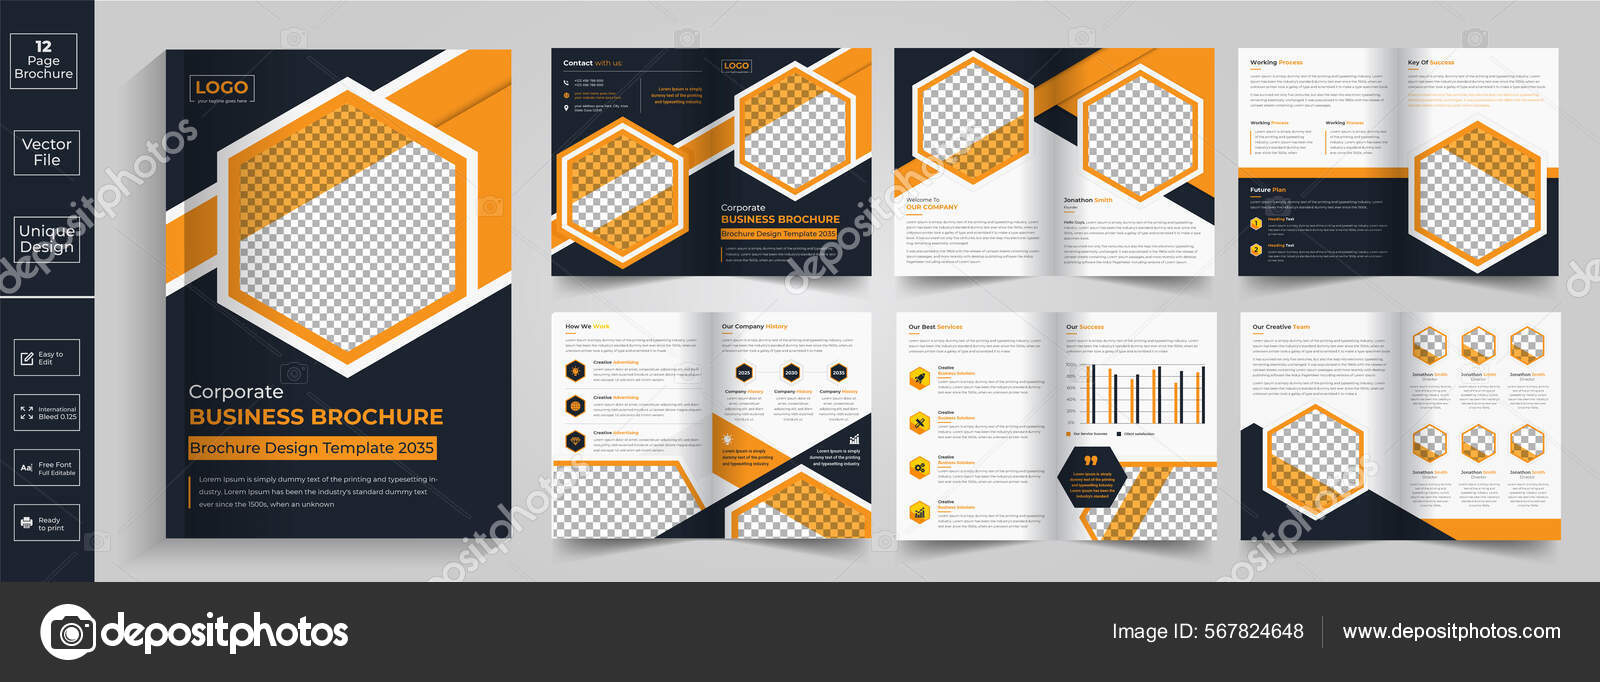 Creative brochure design pdf Stockvektoren, lizenzfreie